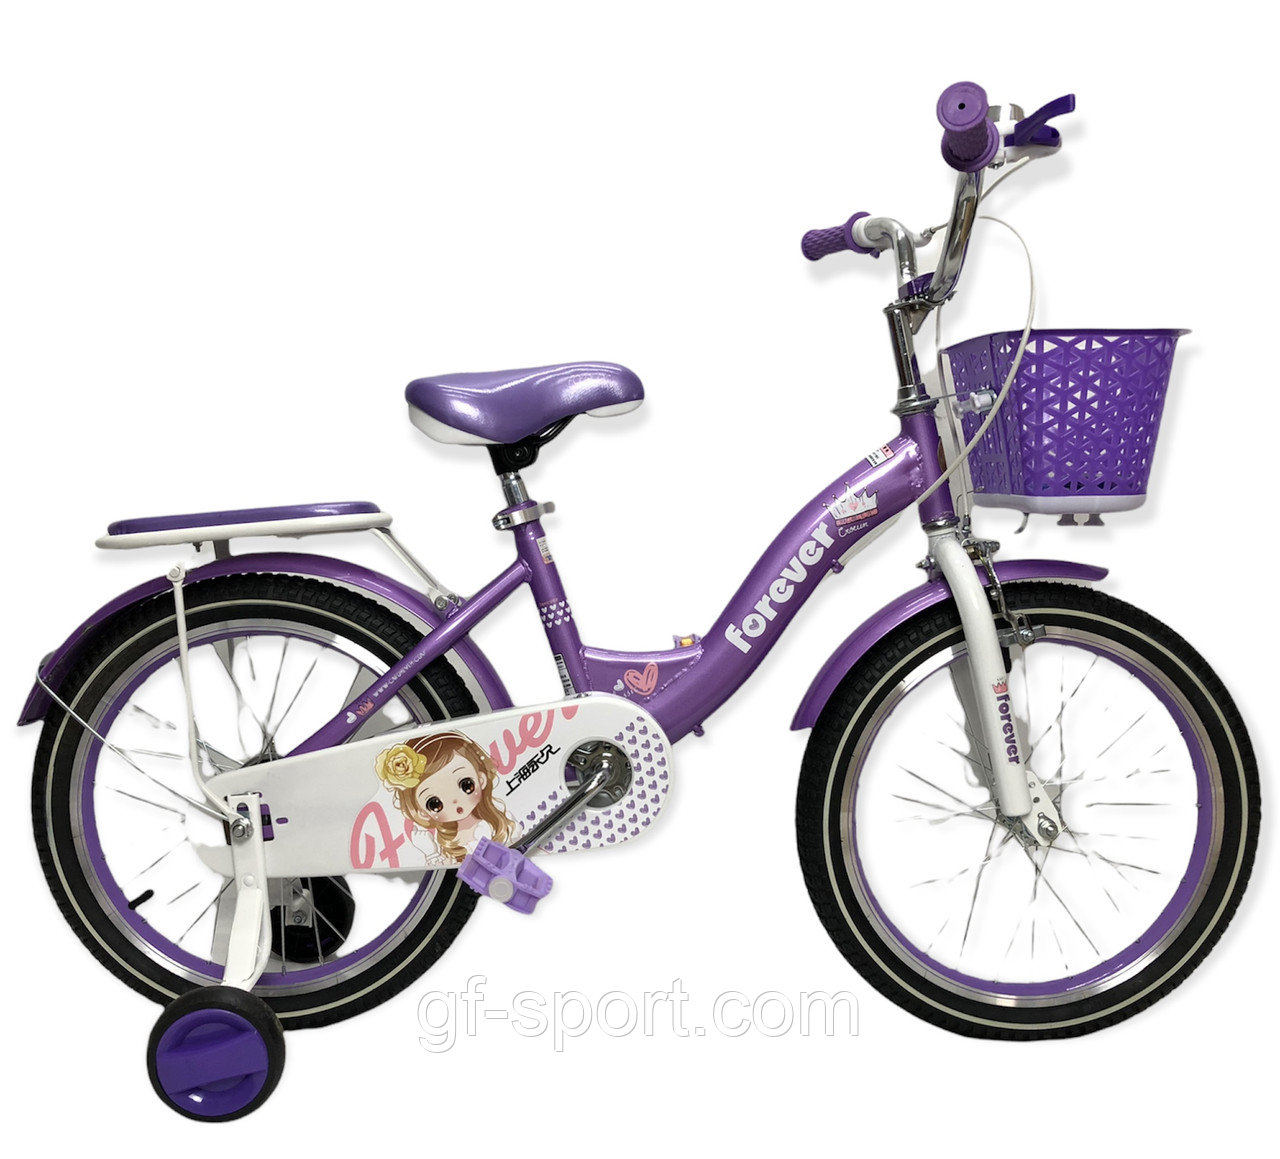 Велосипед Forever фиолетовый оригинал детский с холостым ходом 18 размер (519-18)